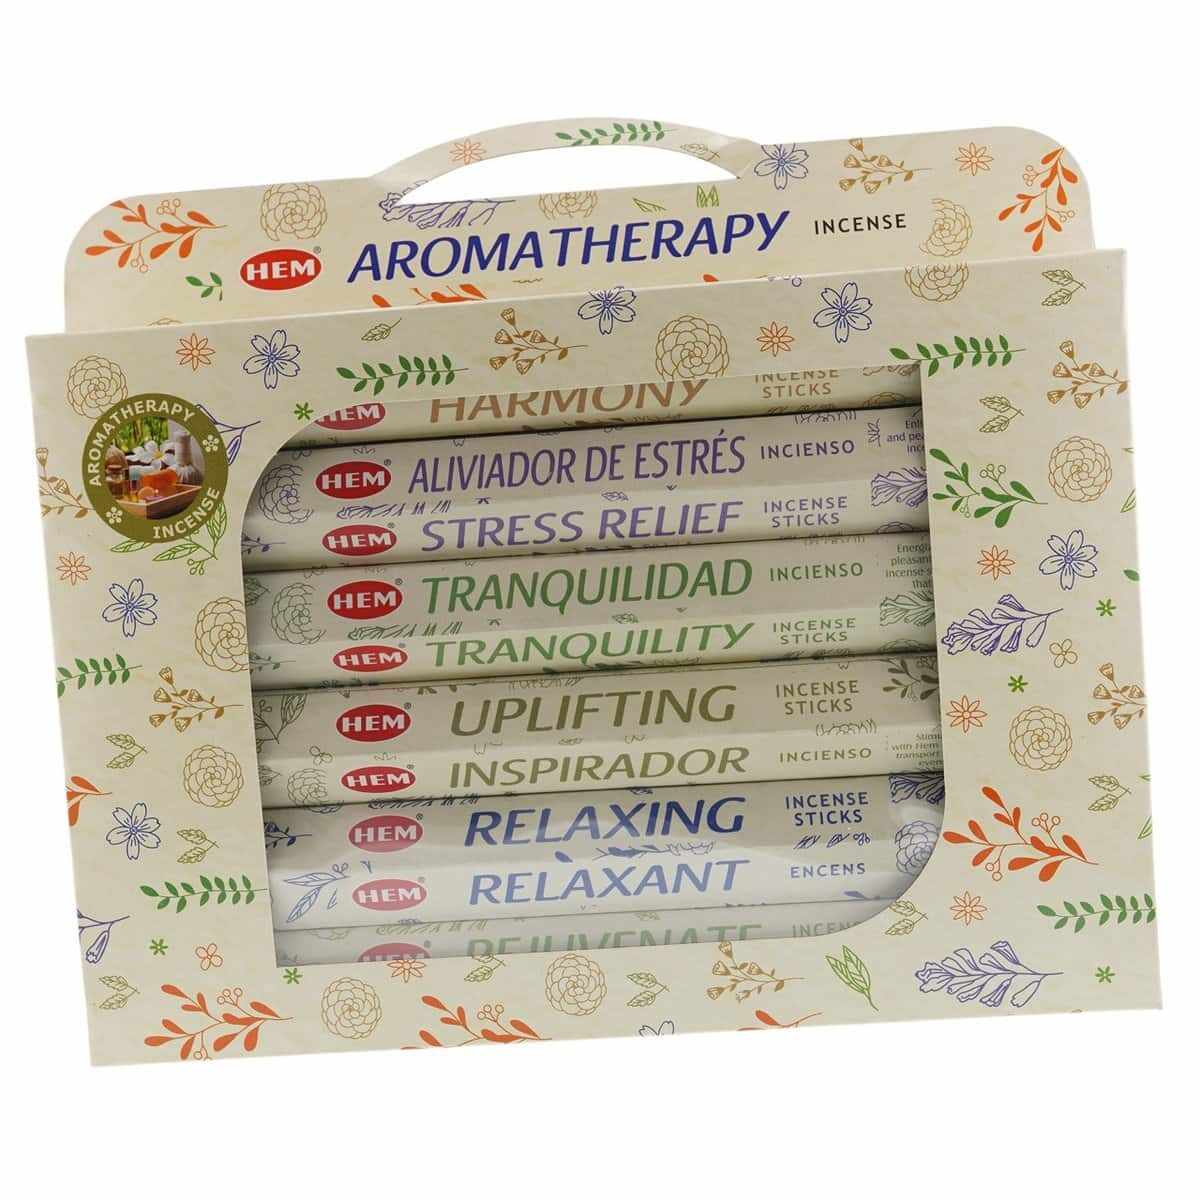 Betisoare parfumate hem aromatherapy 6 pachete